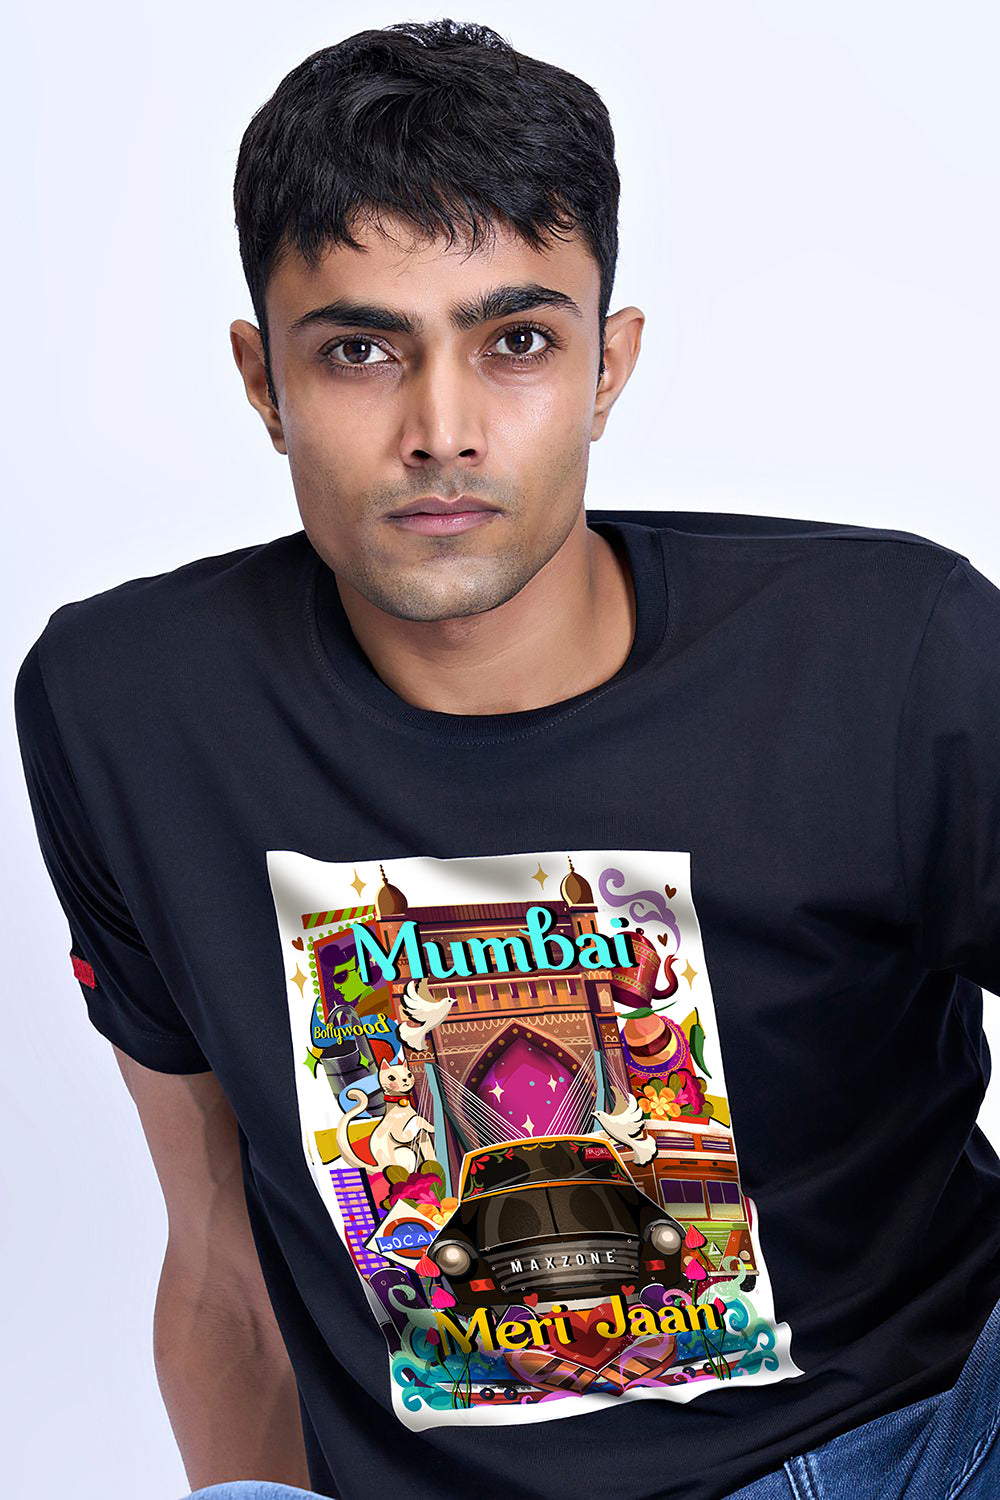 Aamchi Mumbai T-SHIRT Maxzone Clothing   